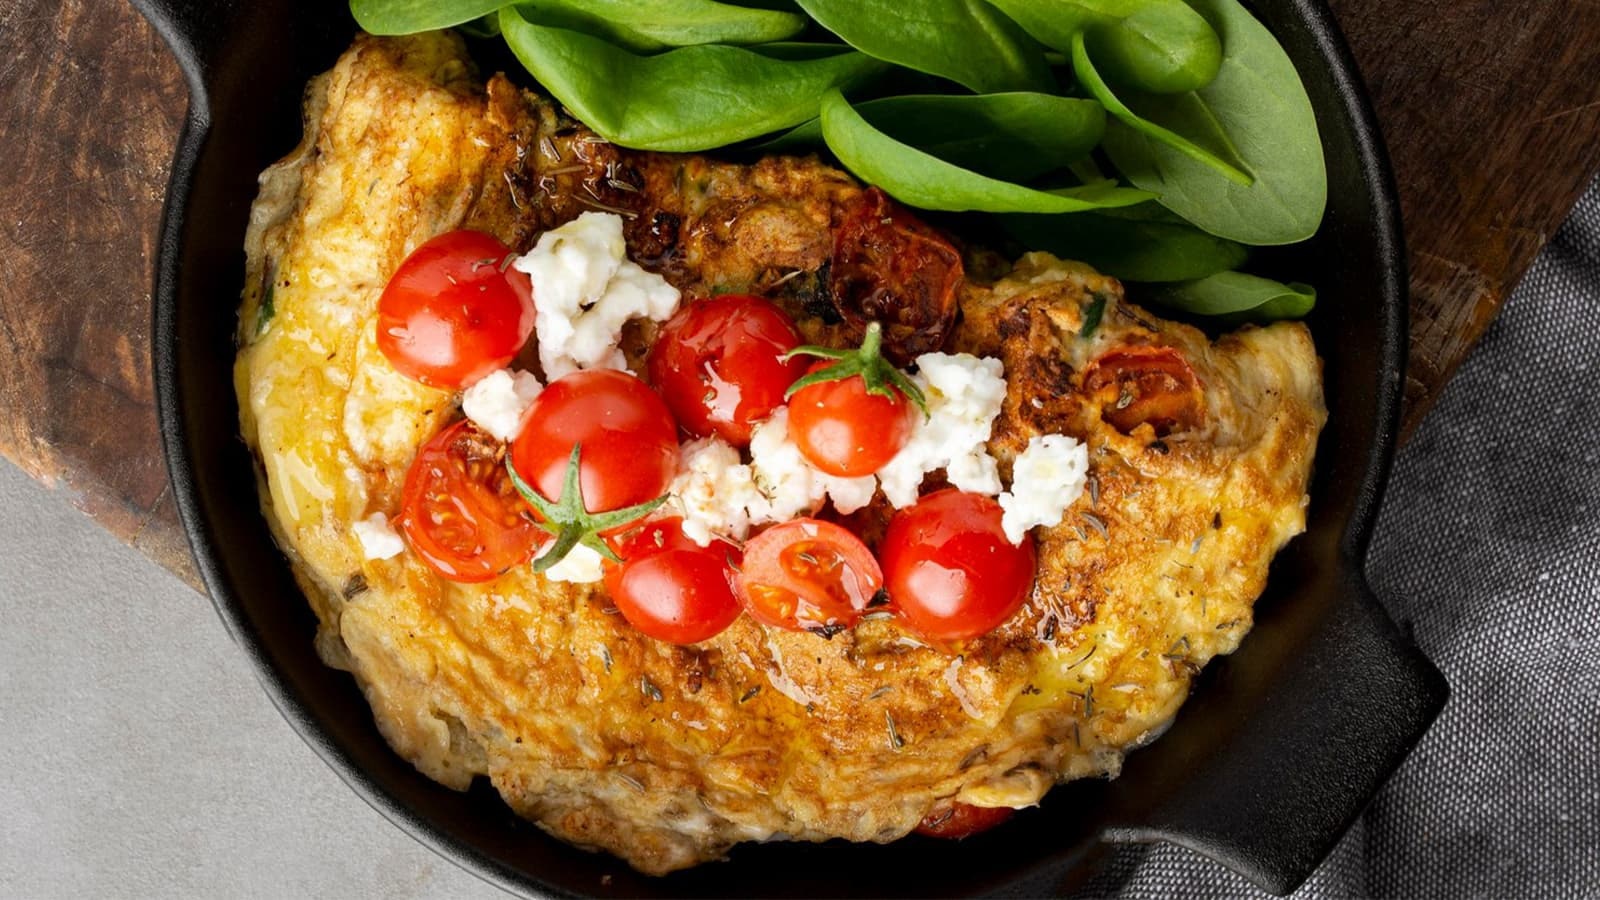 Rezept für ein Low Carb Omelette. Bild von einem Low Carb Omelette mit Tomaten und Feta in einer Pfanne.